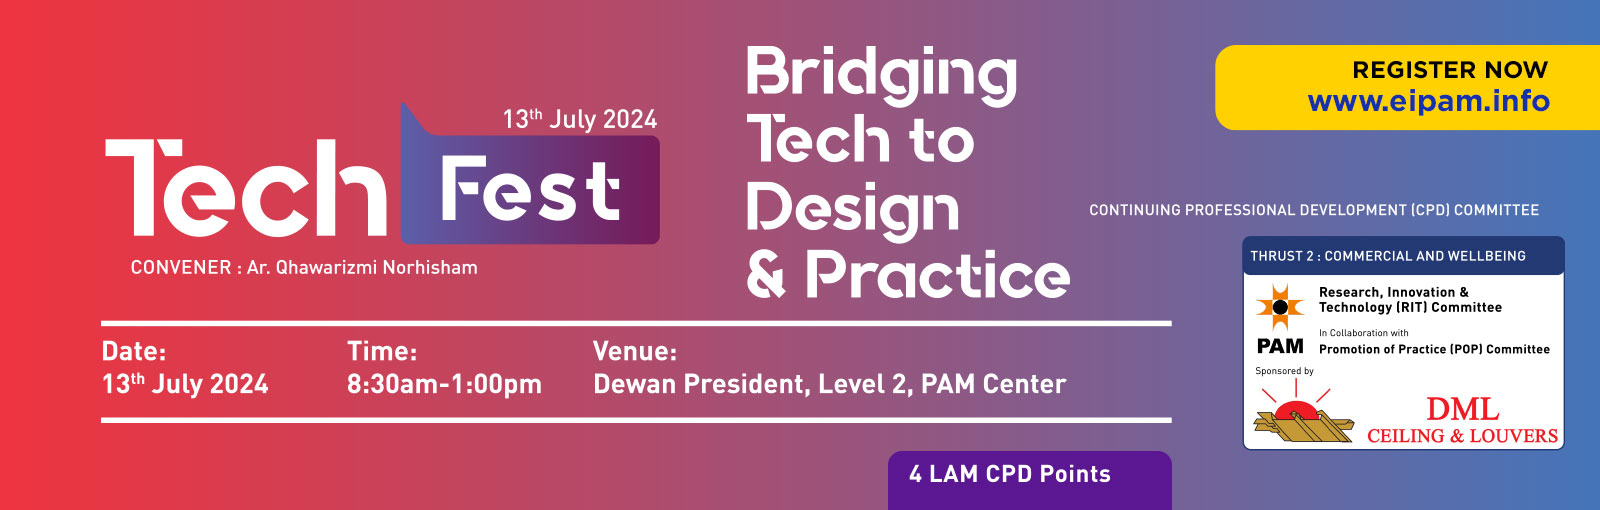 TECH FEST: Bridging Tech to Design & Practice